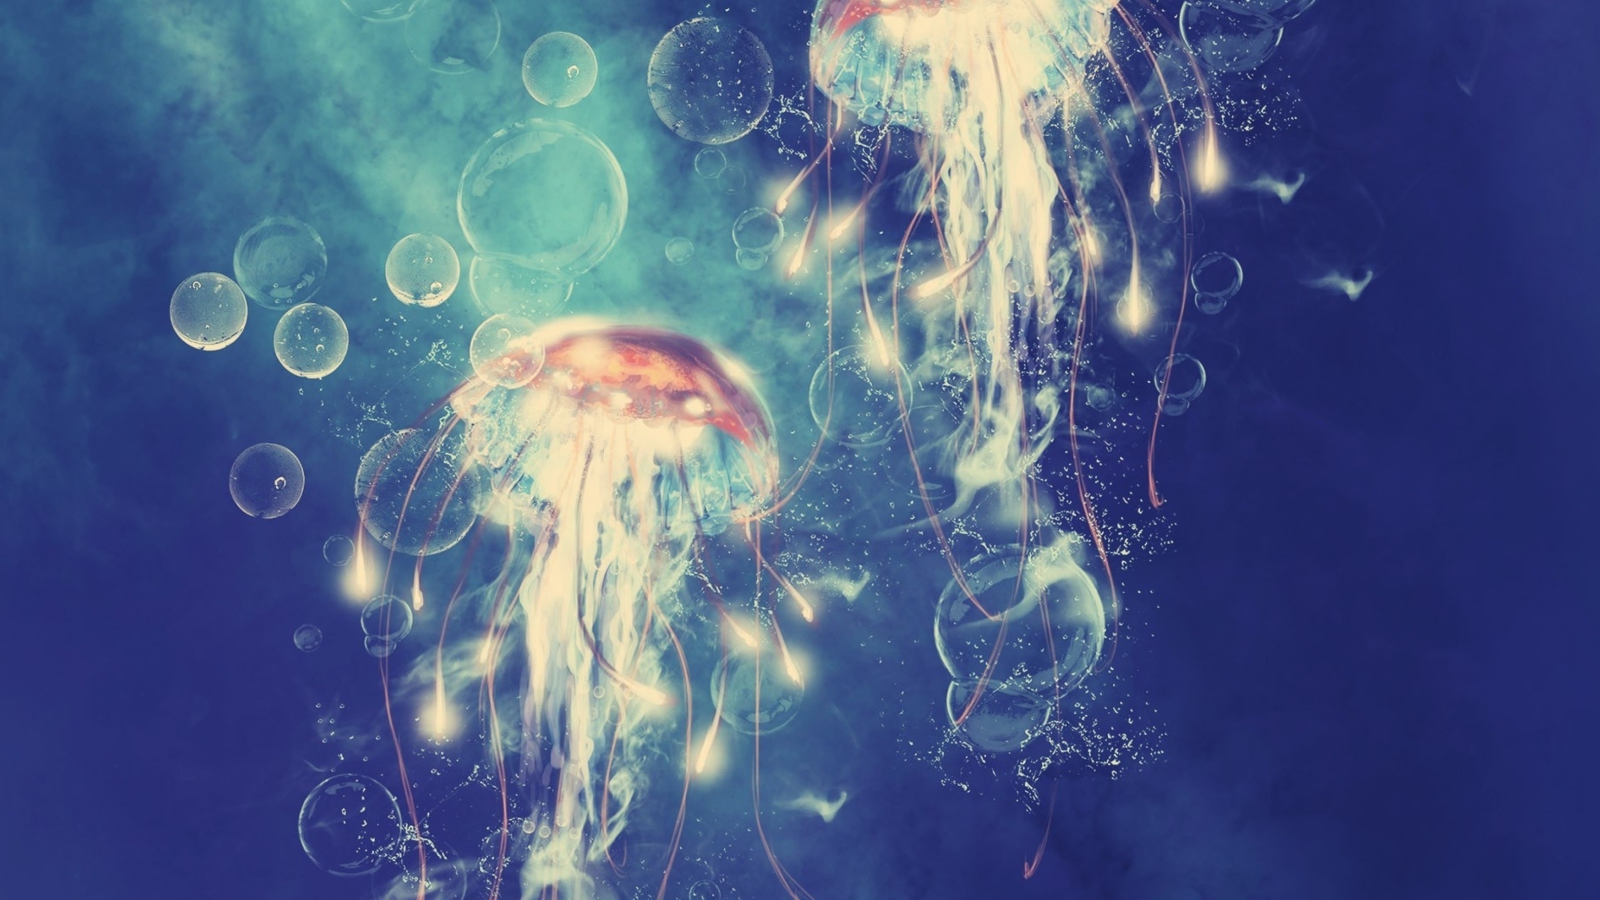 Digital Jellyfish wallpaper 1600x900